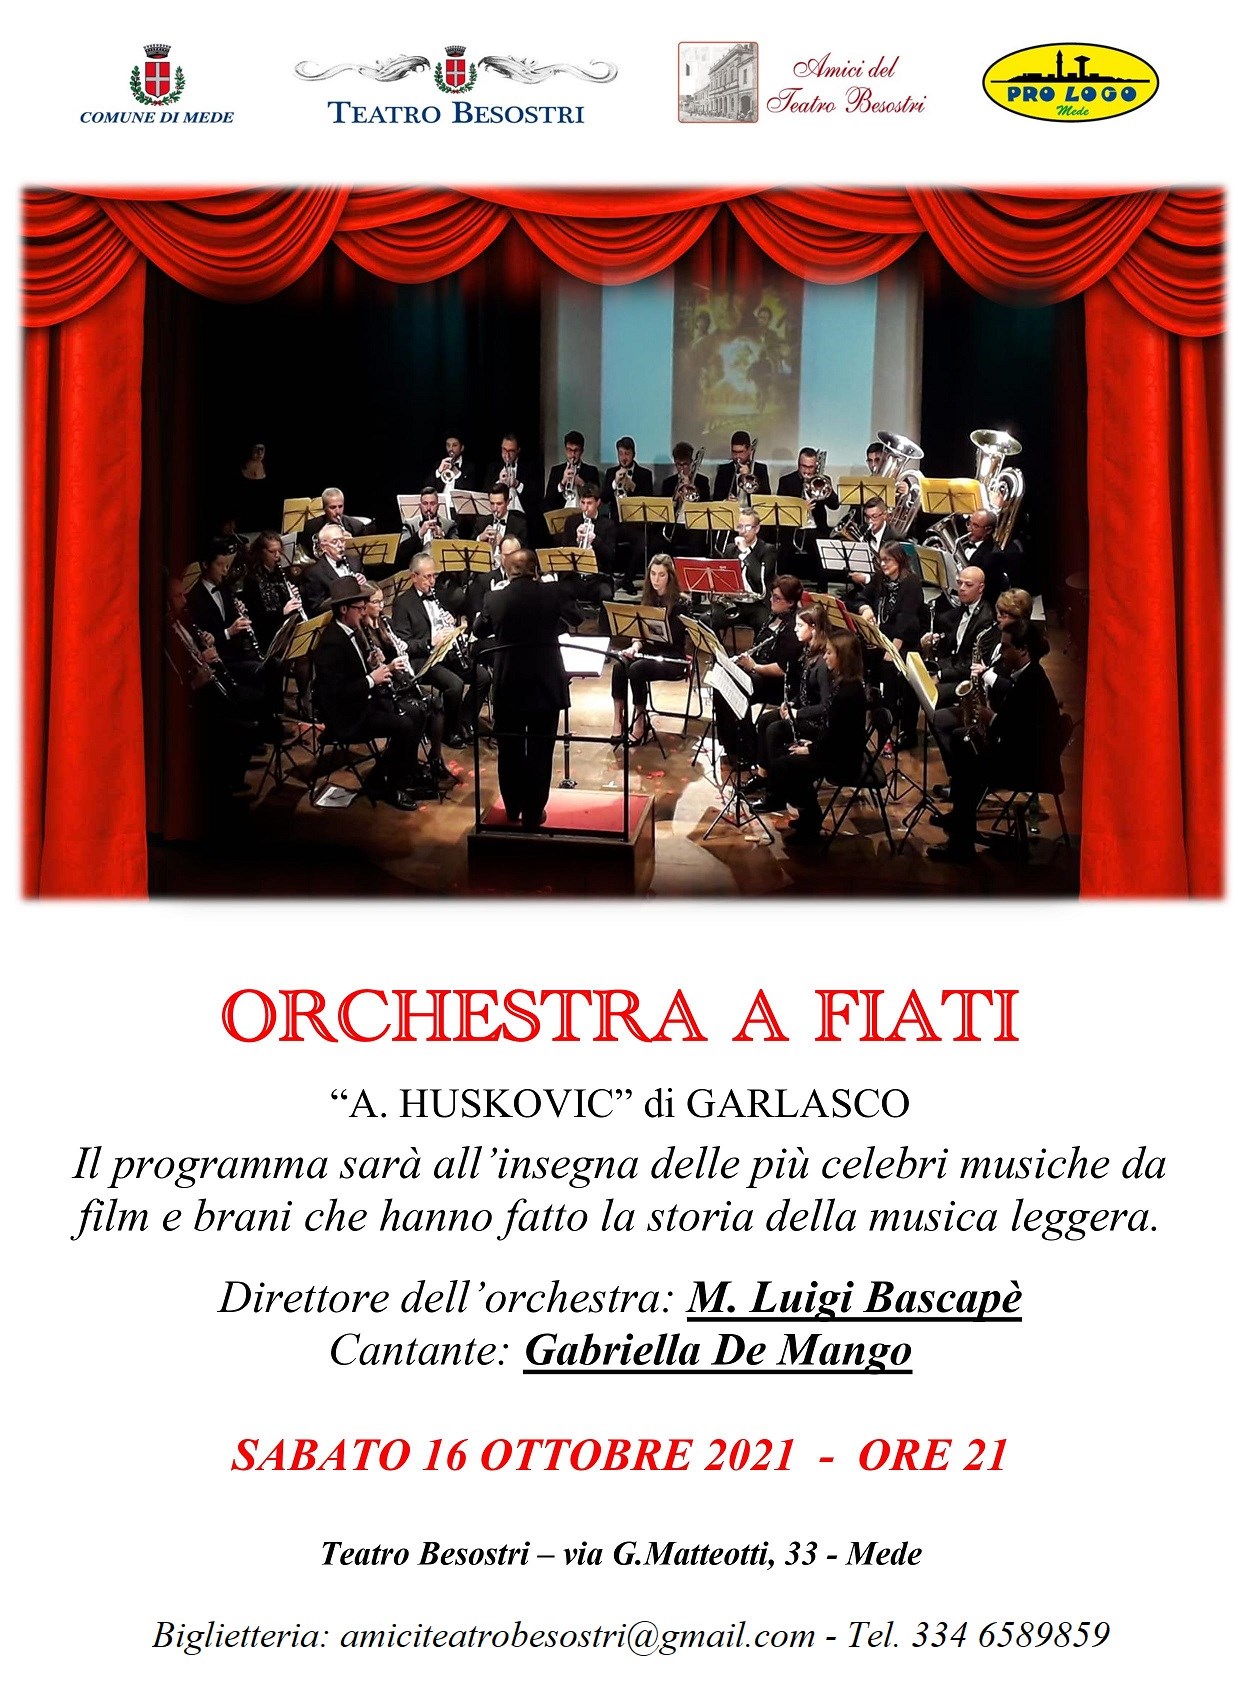 SABATO 16 OTTOBRE ORE 21:00 SERATA MUSICALE CON  L'ORCHESTRA A FIATI “A. HUSKOVIC” DI GARLASCO